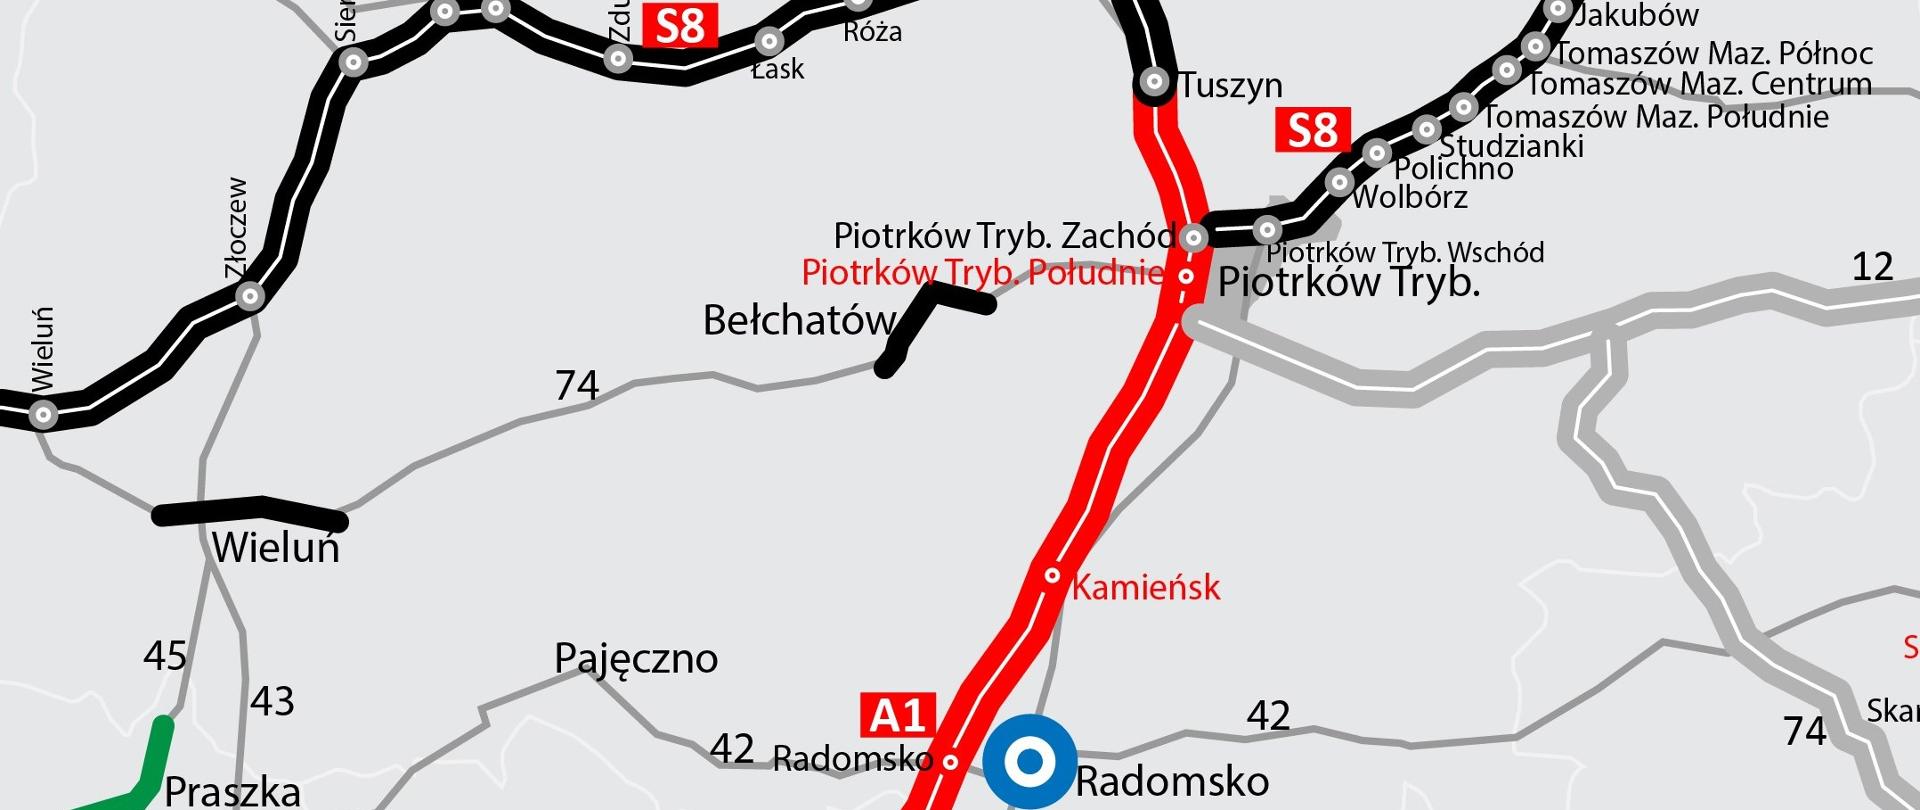 A1 Tuszyn - Częstochowa - mapa